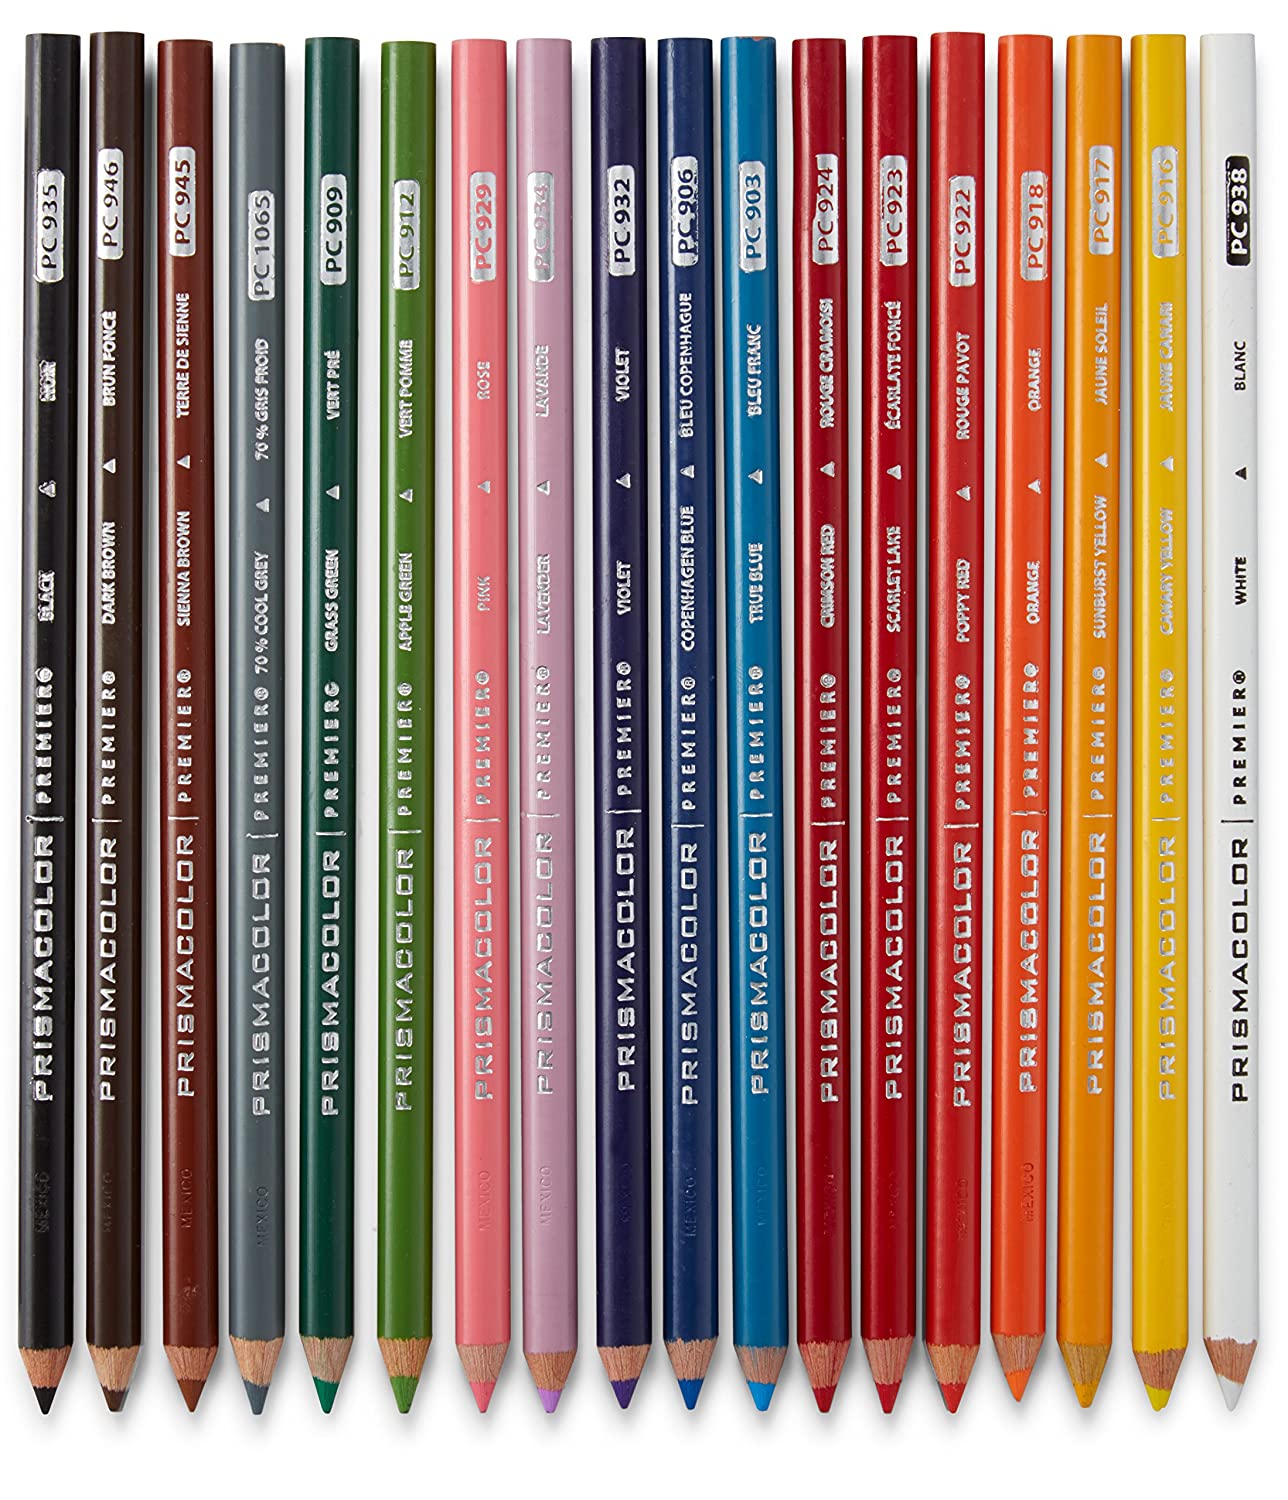 Prismacolor Premier Colored Pencils, Soft Core, 48-Count